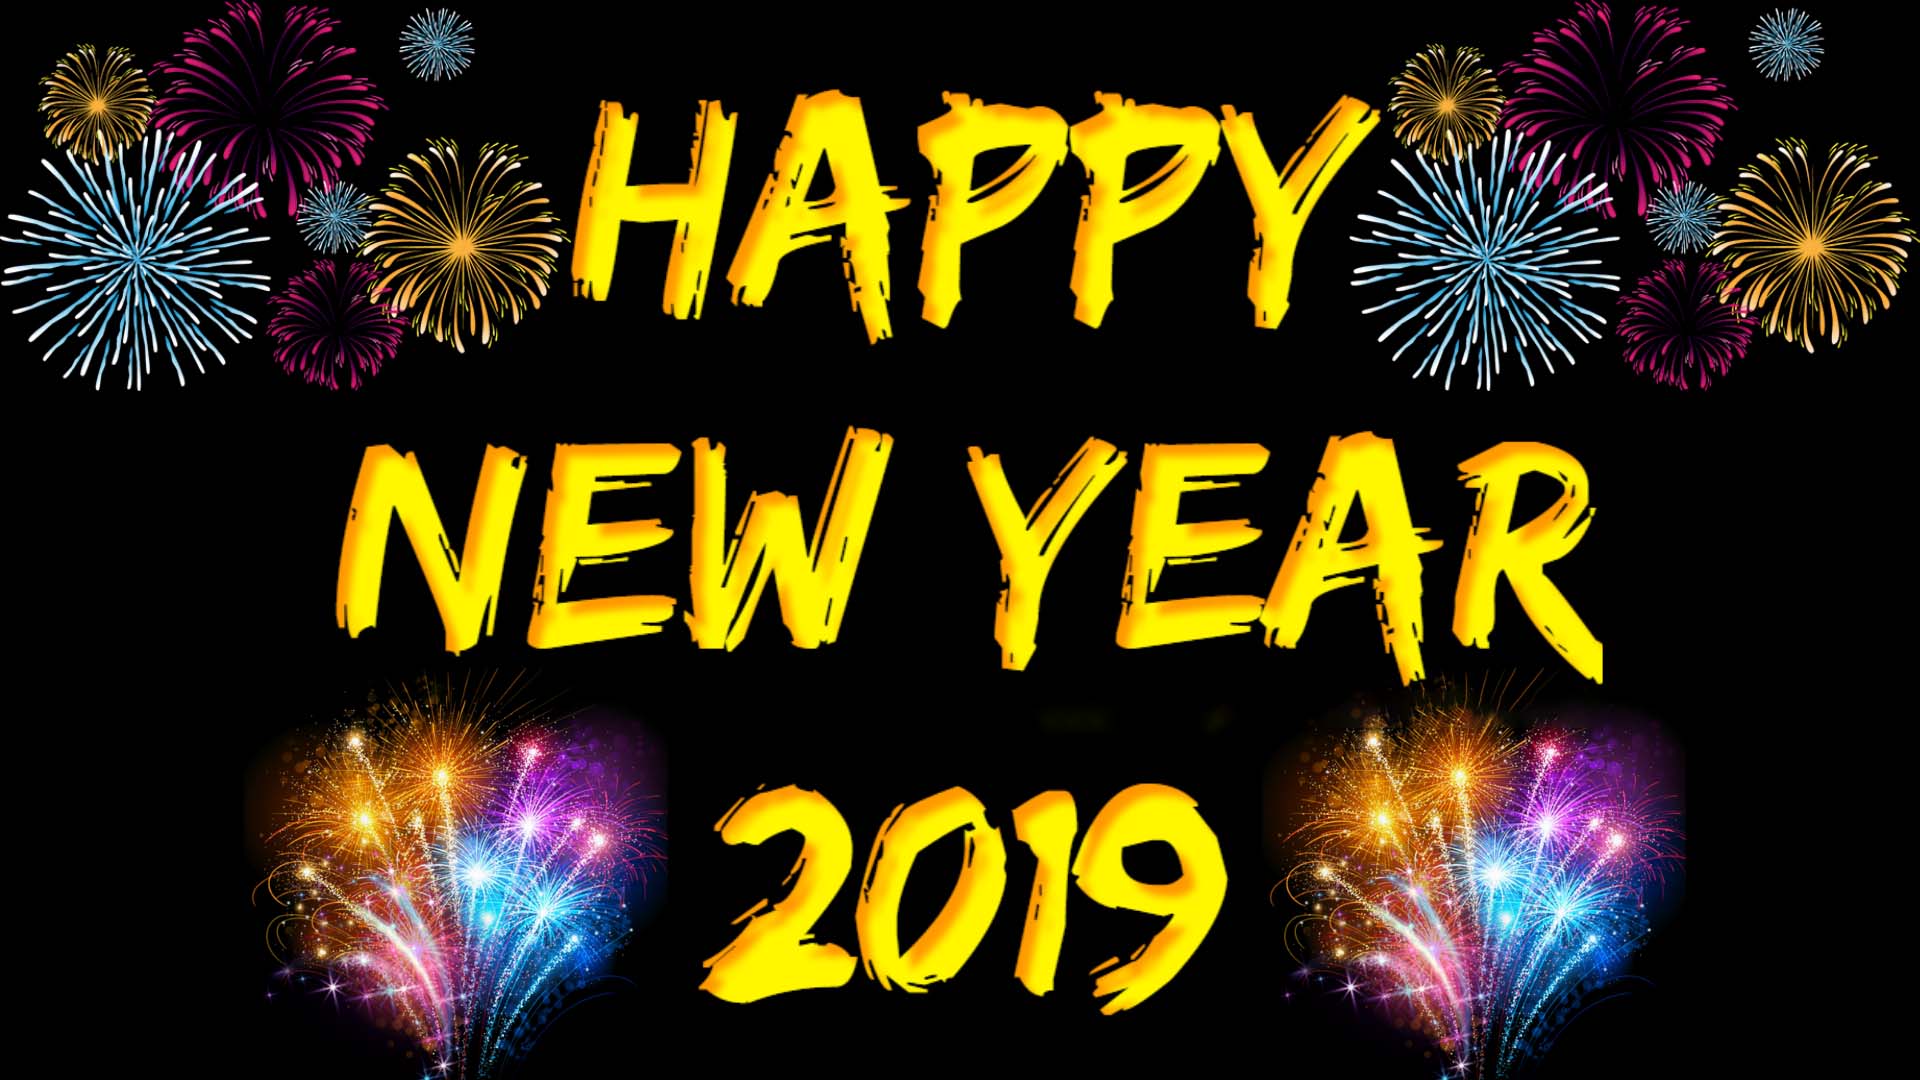 Happy new year wallpaper 2019 full hd